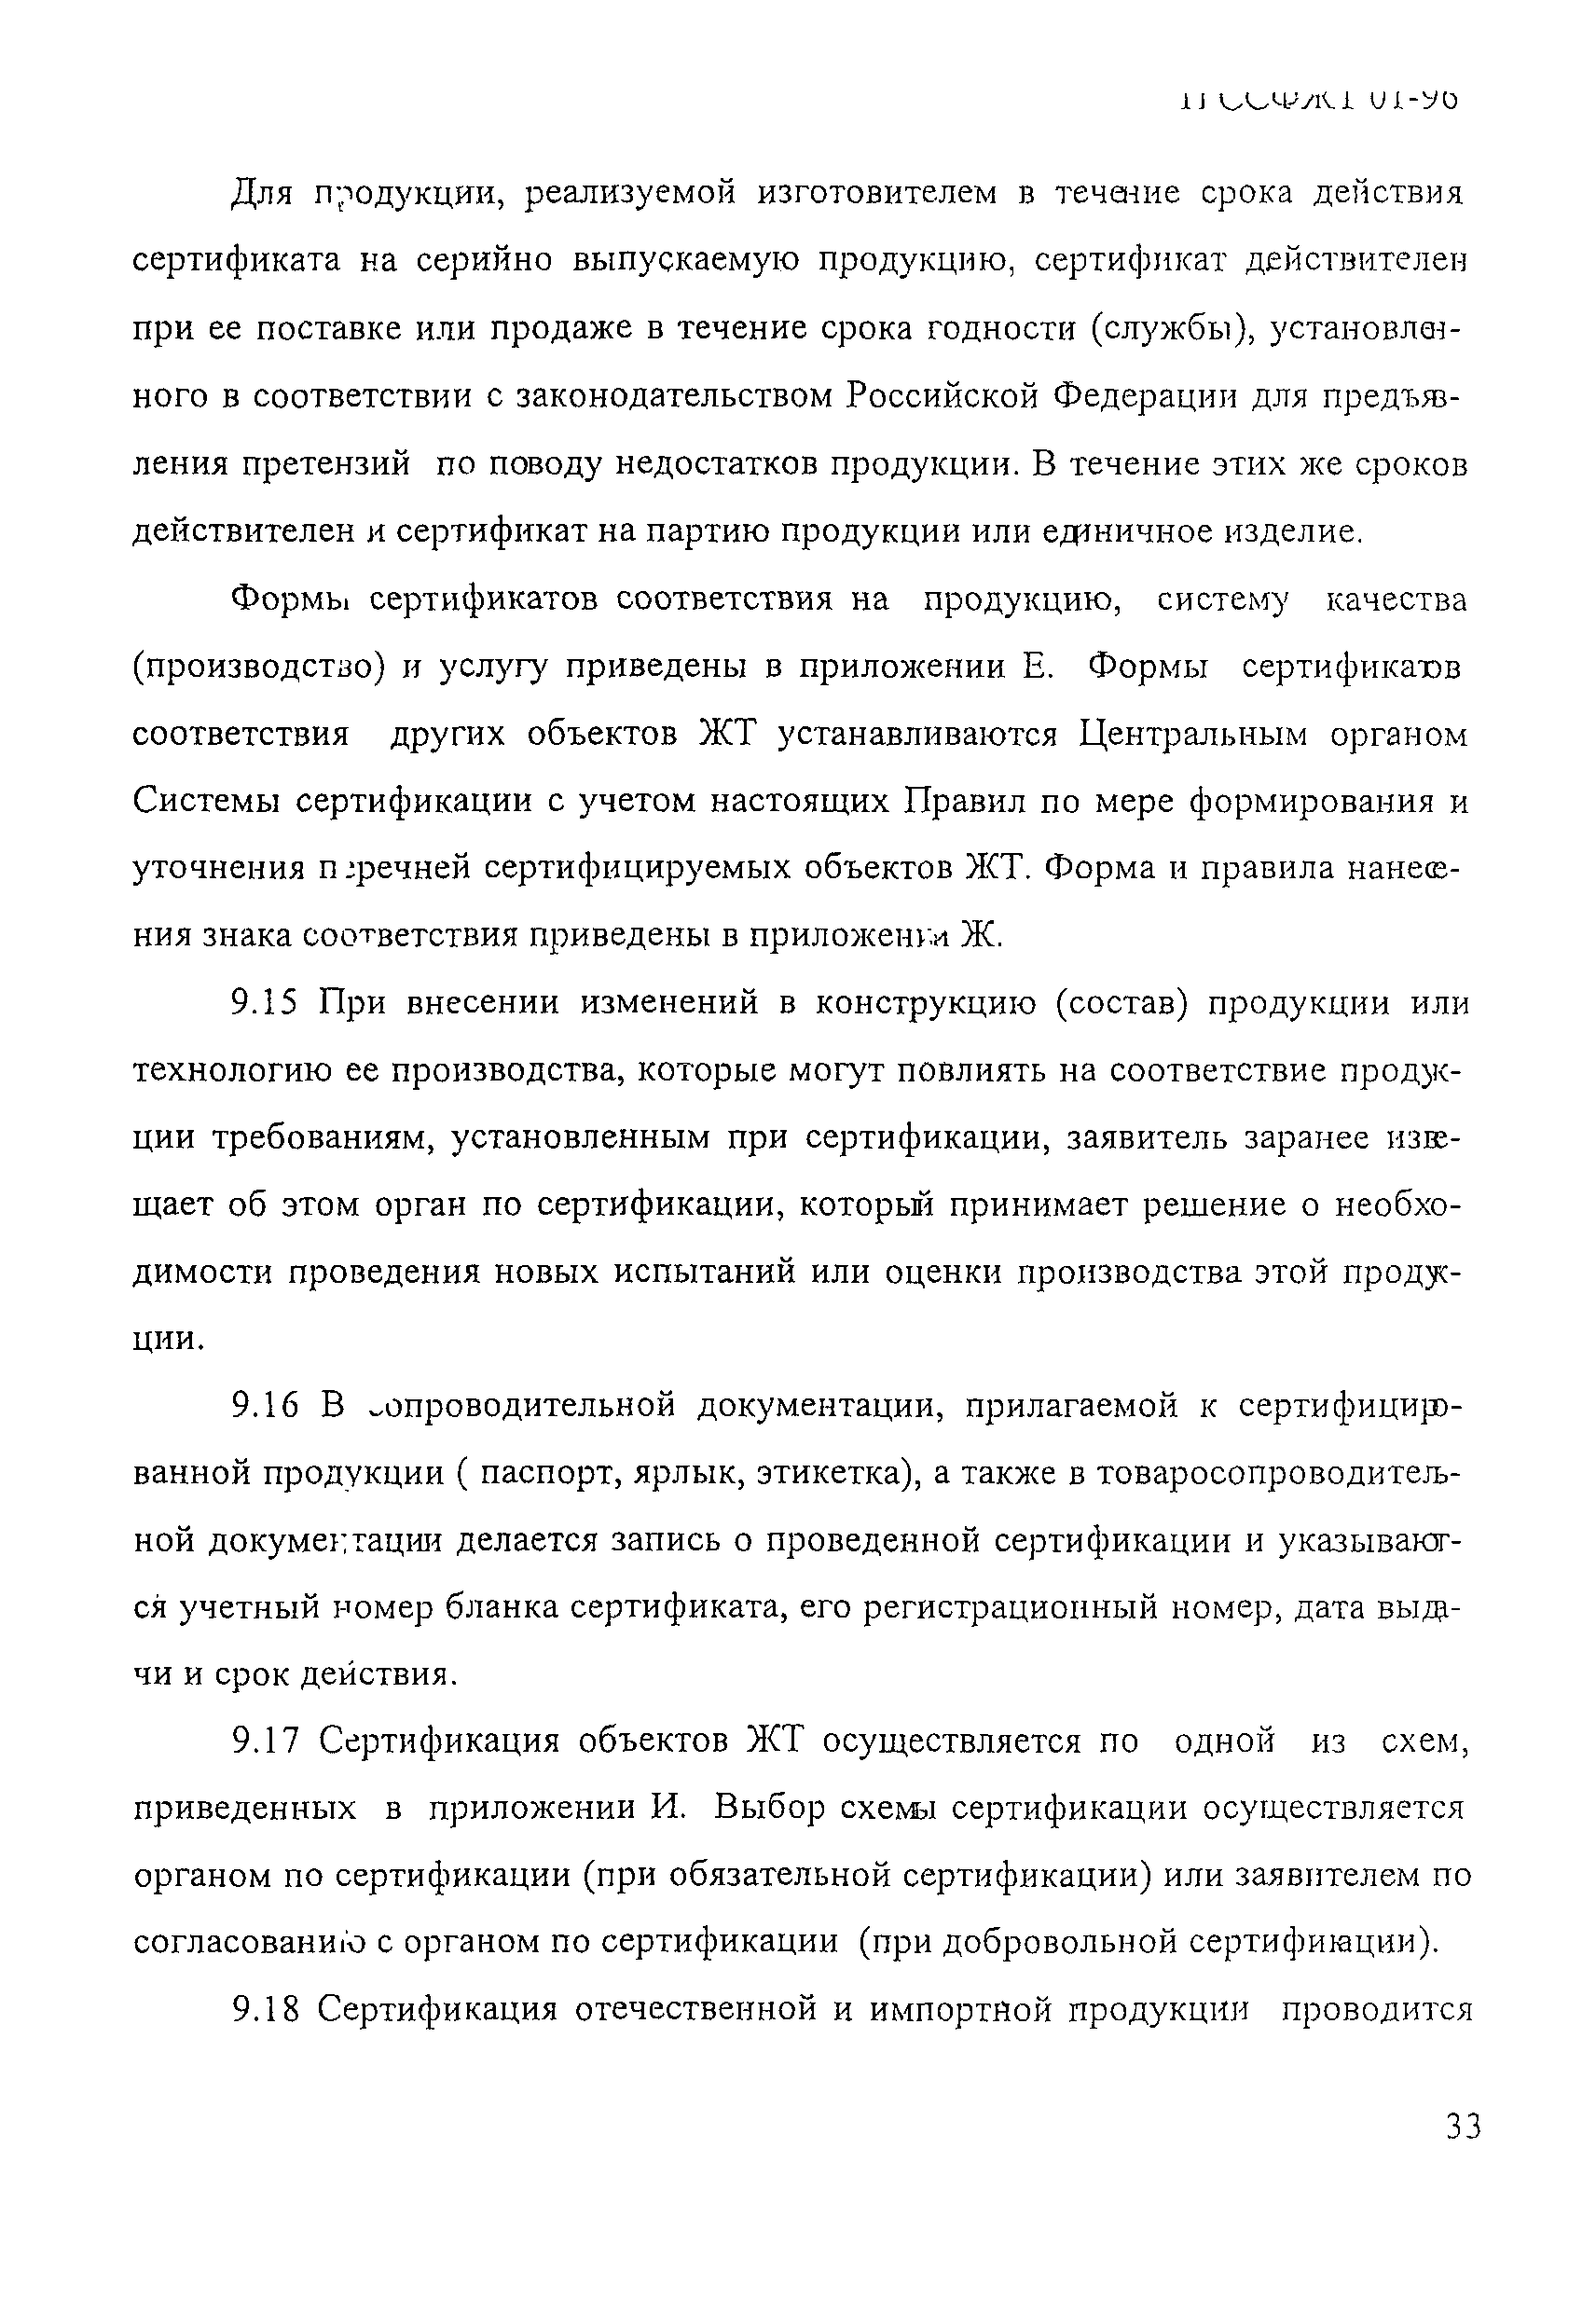 П ССФЖТ 01-96